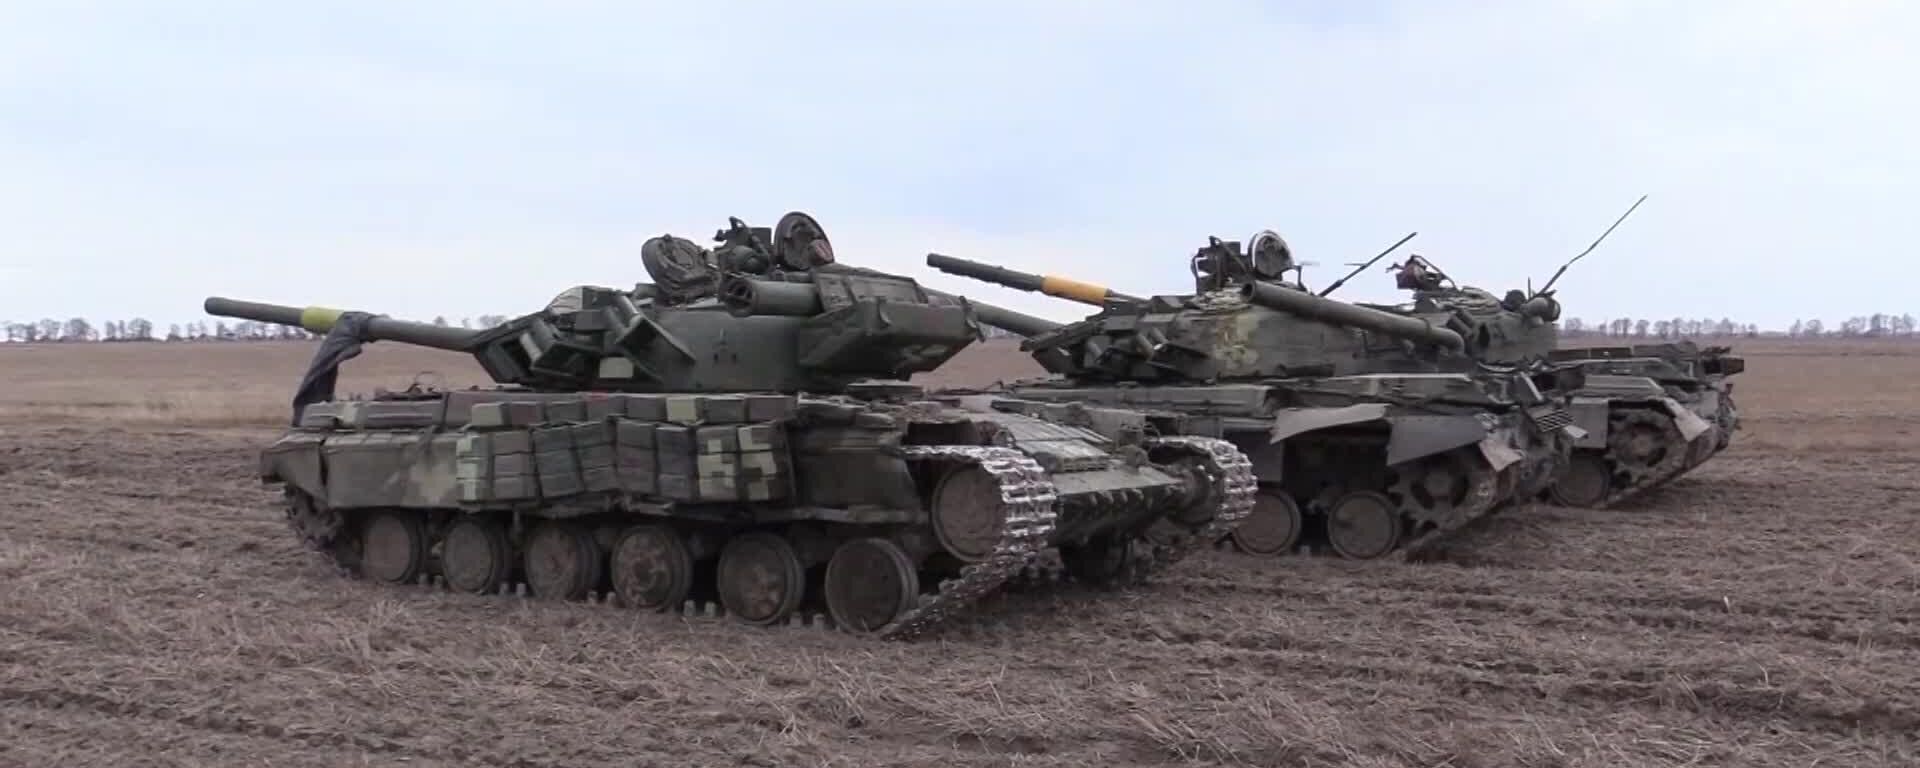 Tanques T-64 das Forças Armadas ucranianas capturados pelas Forças Armadas da Rússia, na região de Chernigov, Ucrânia, foto publicada em 1º de abril de 2022 - Sputnik Brasil, 1920, 04.04.2022